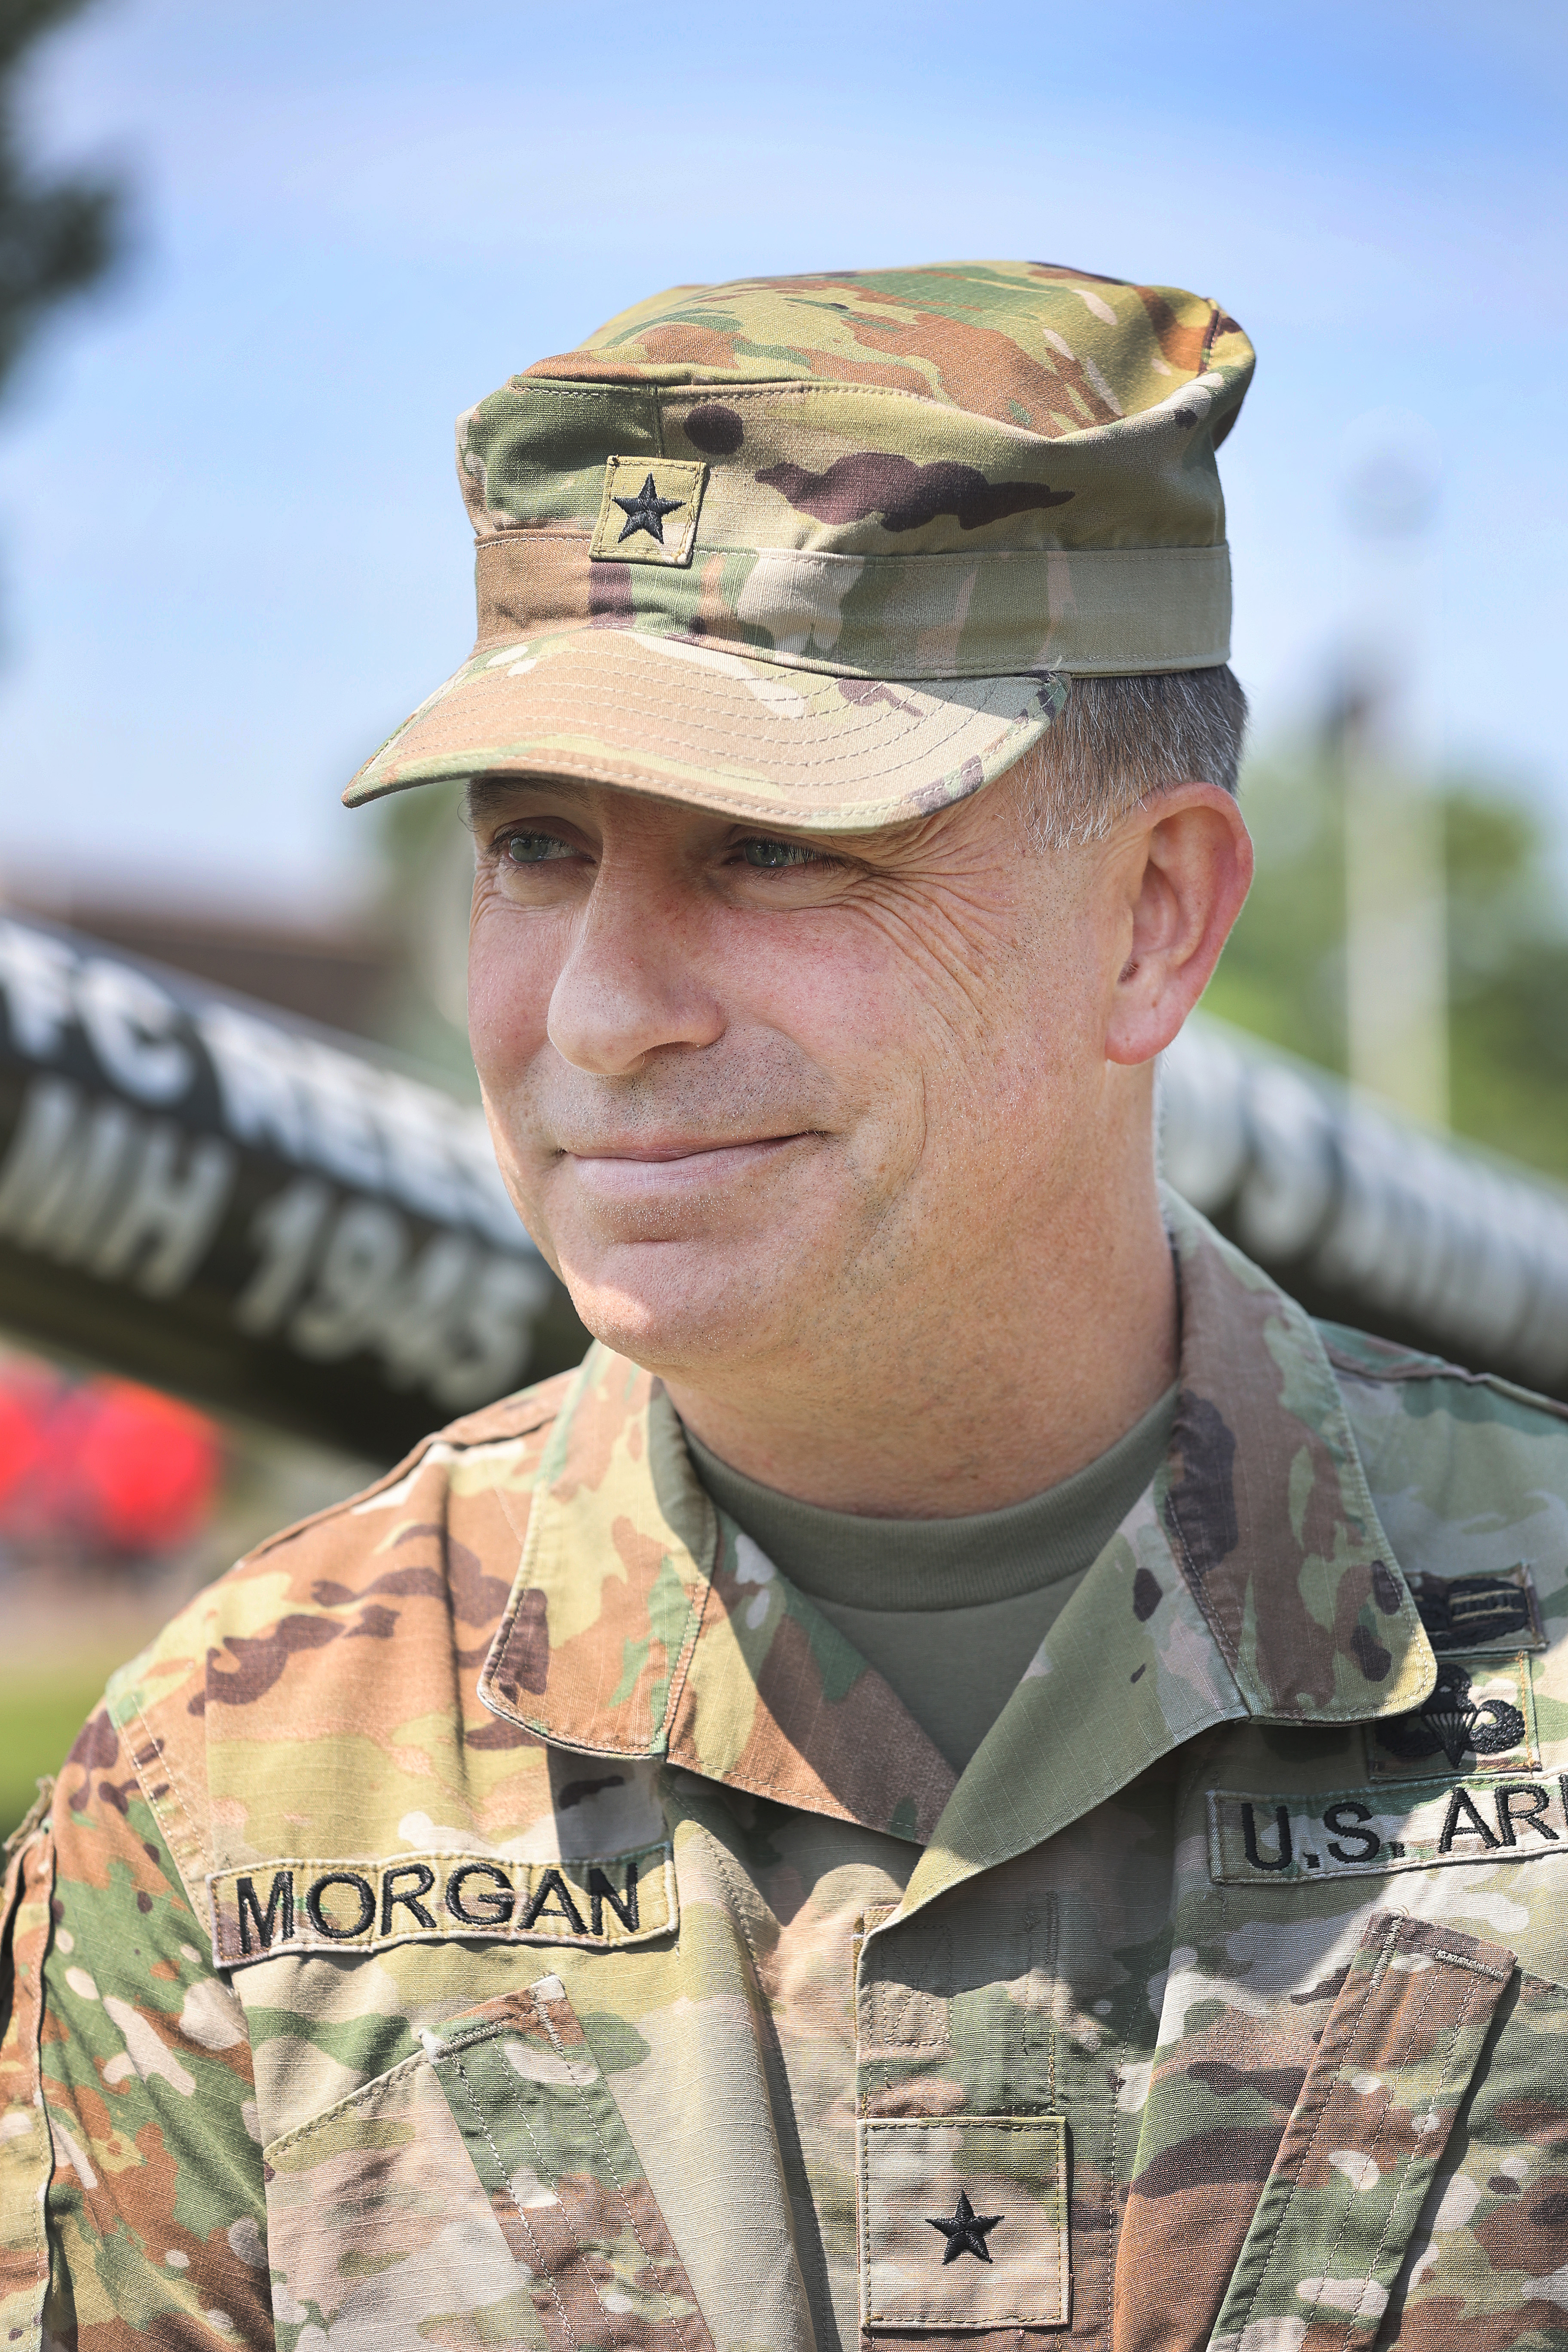 Brig. Gen. Shane Morgan